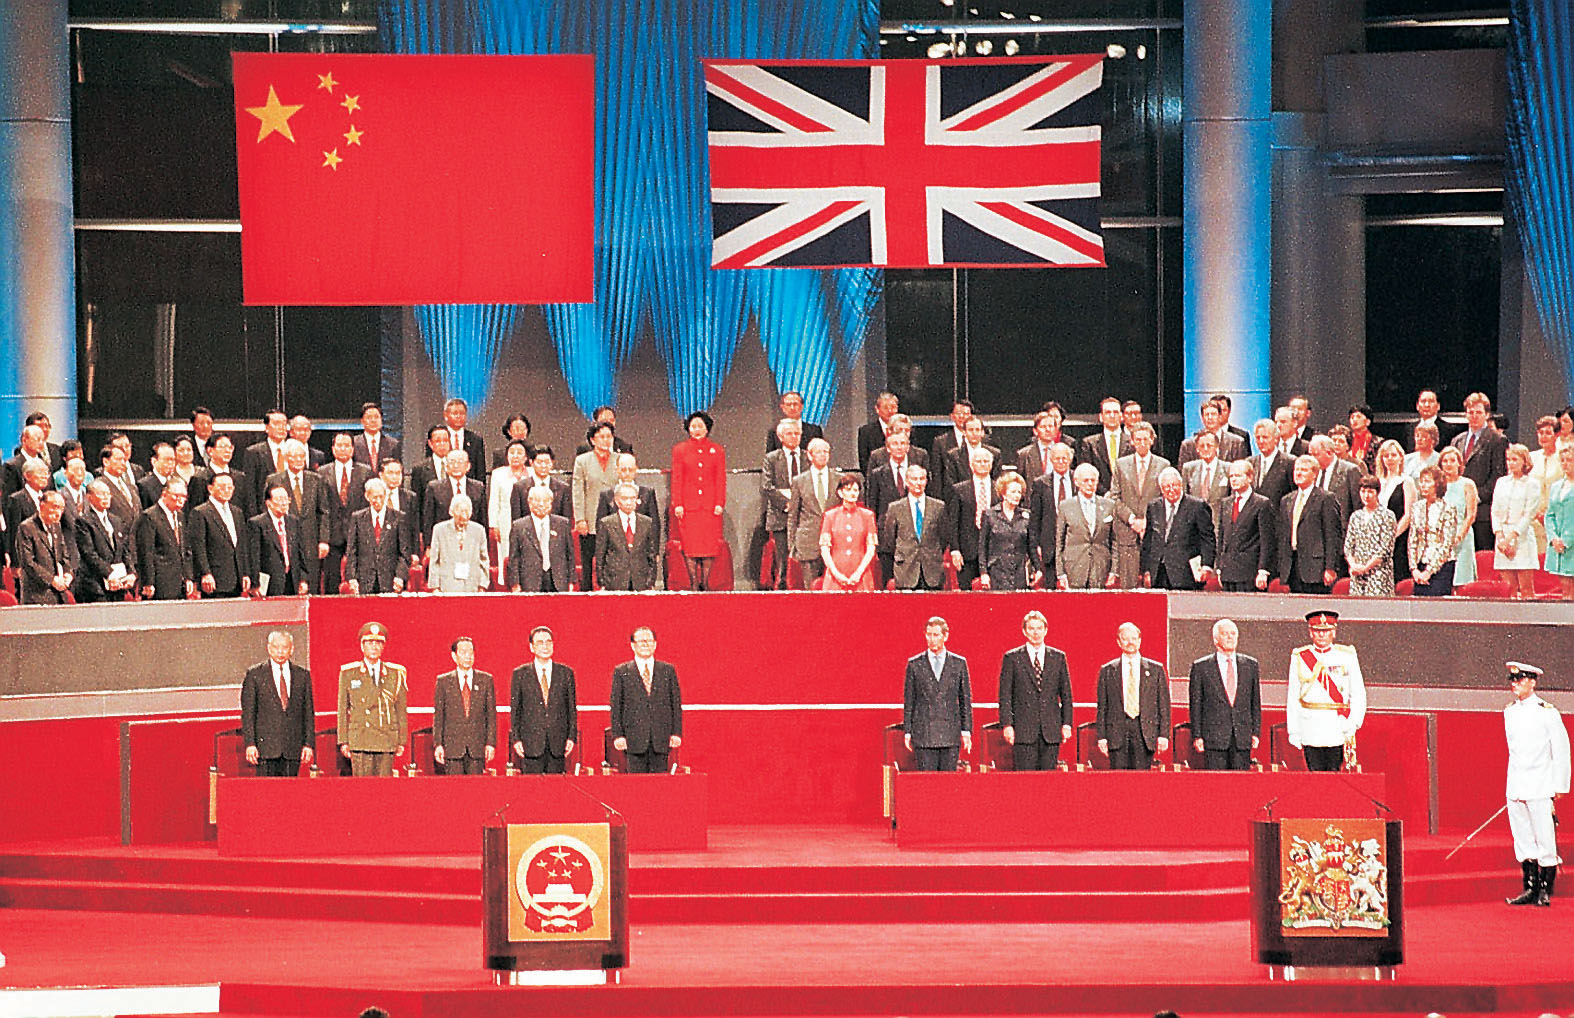 Hong Kong Handover 1 July 1997